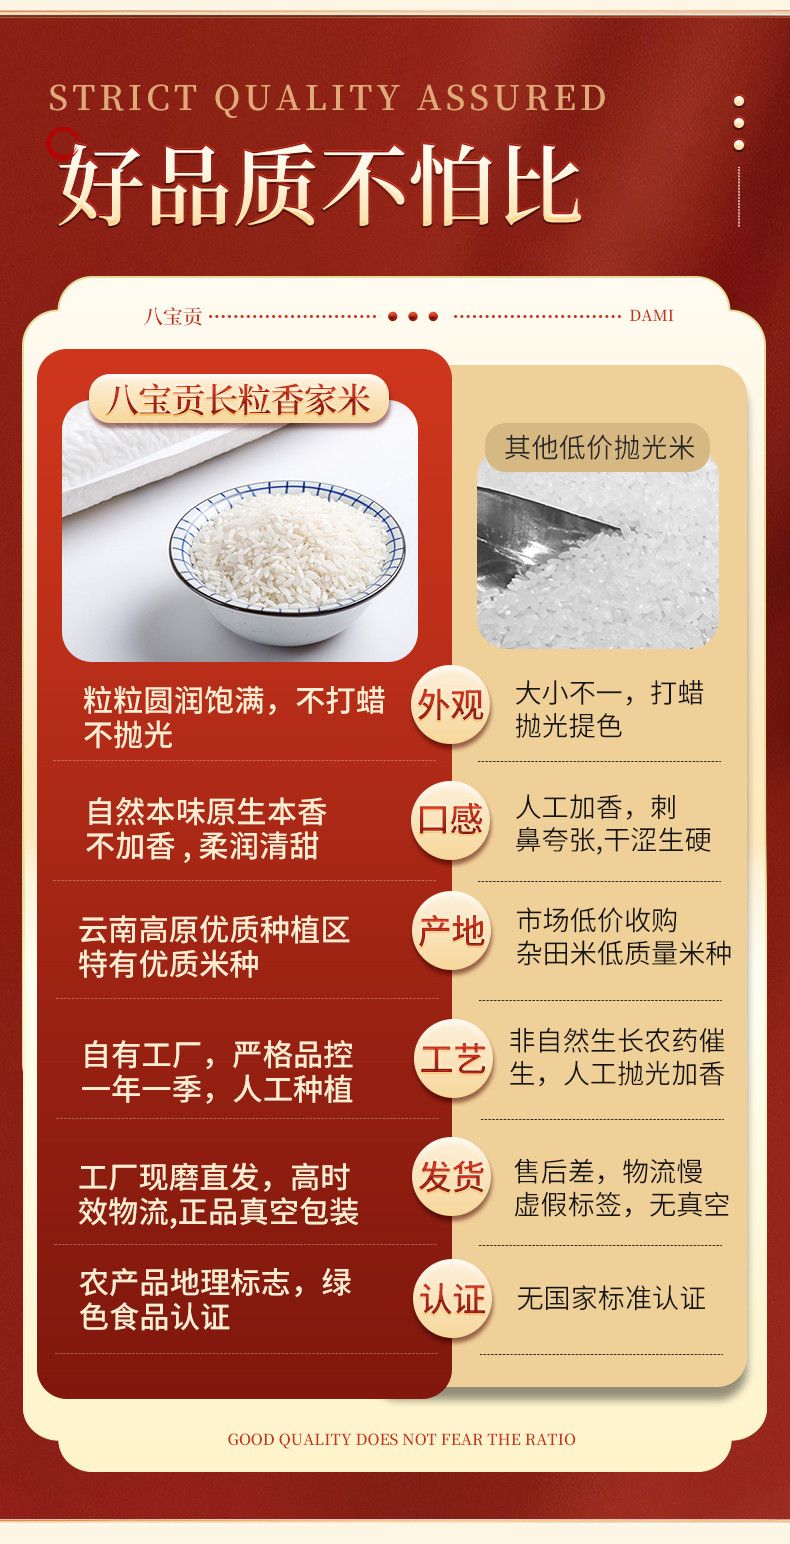 八宝贡 文山八宝贡长粒香软米 家米 一季稻新米